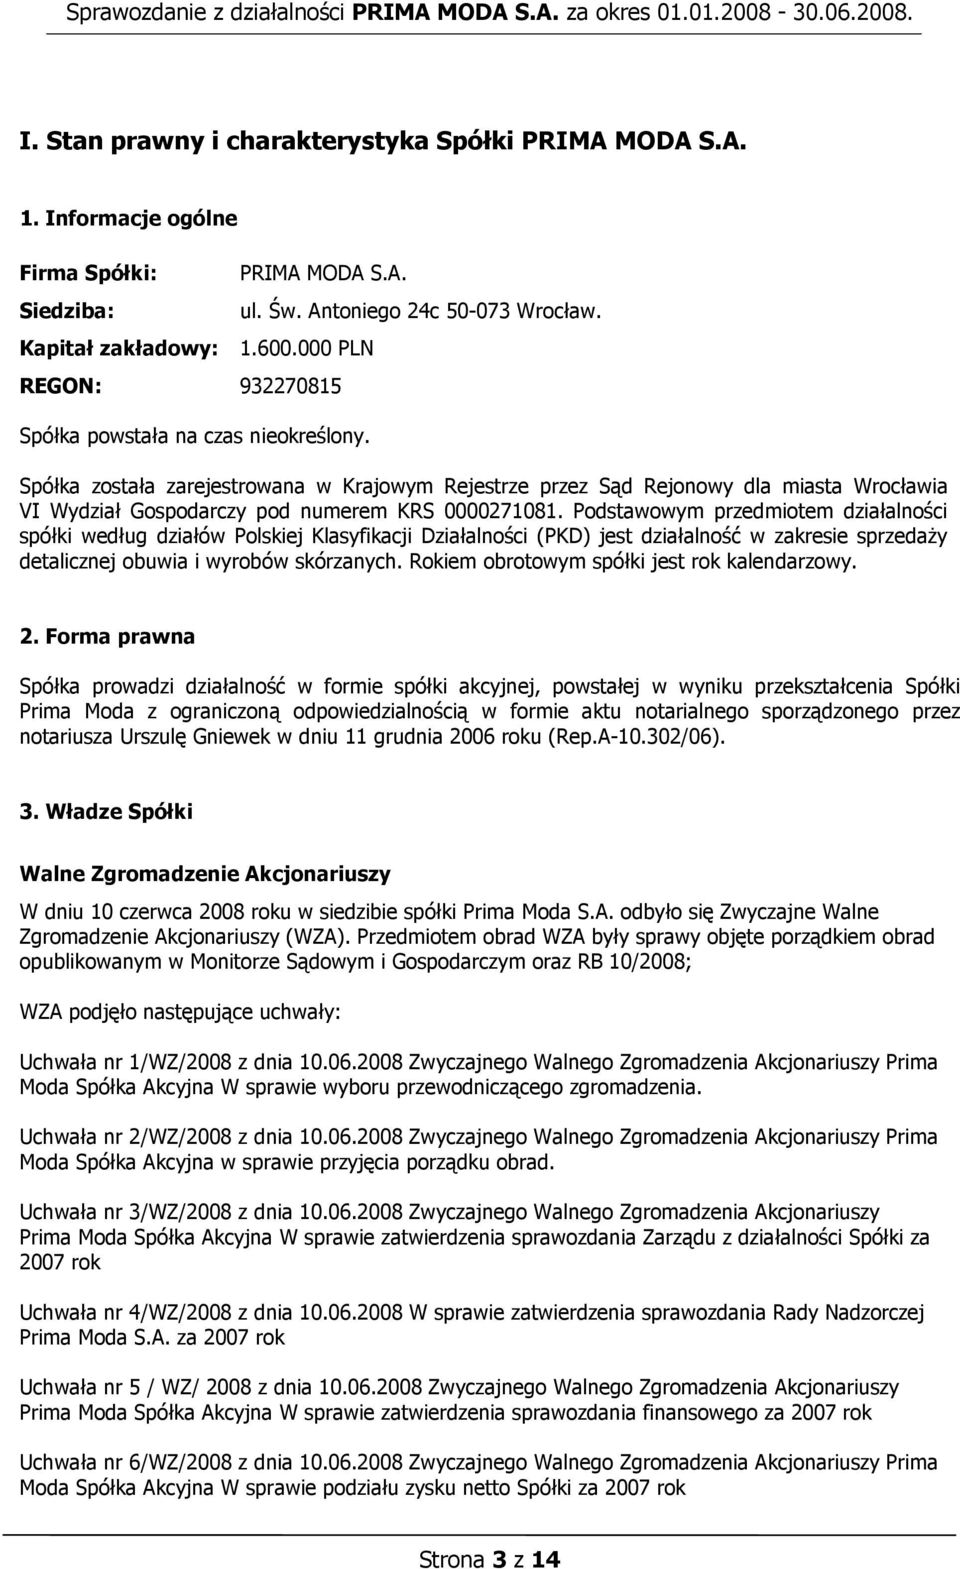 Spółka została zarejestrowana w Krajowym Rejestrze przez Sąd Rejonowy dla miasta Wrocławia VI Wydział Gospodarczy pod numerem KRS 0000271081.